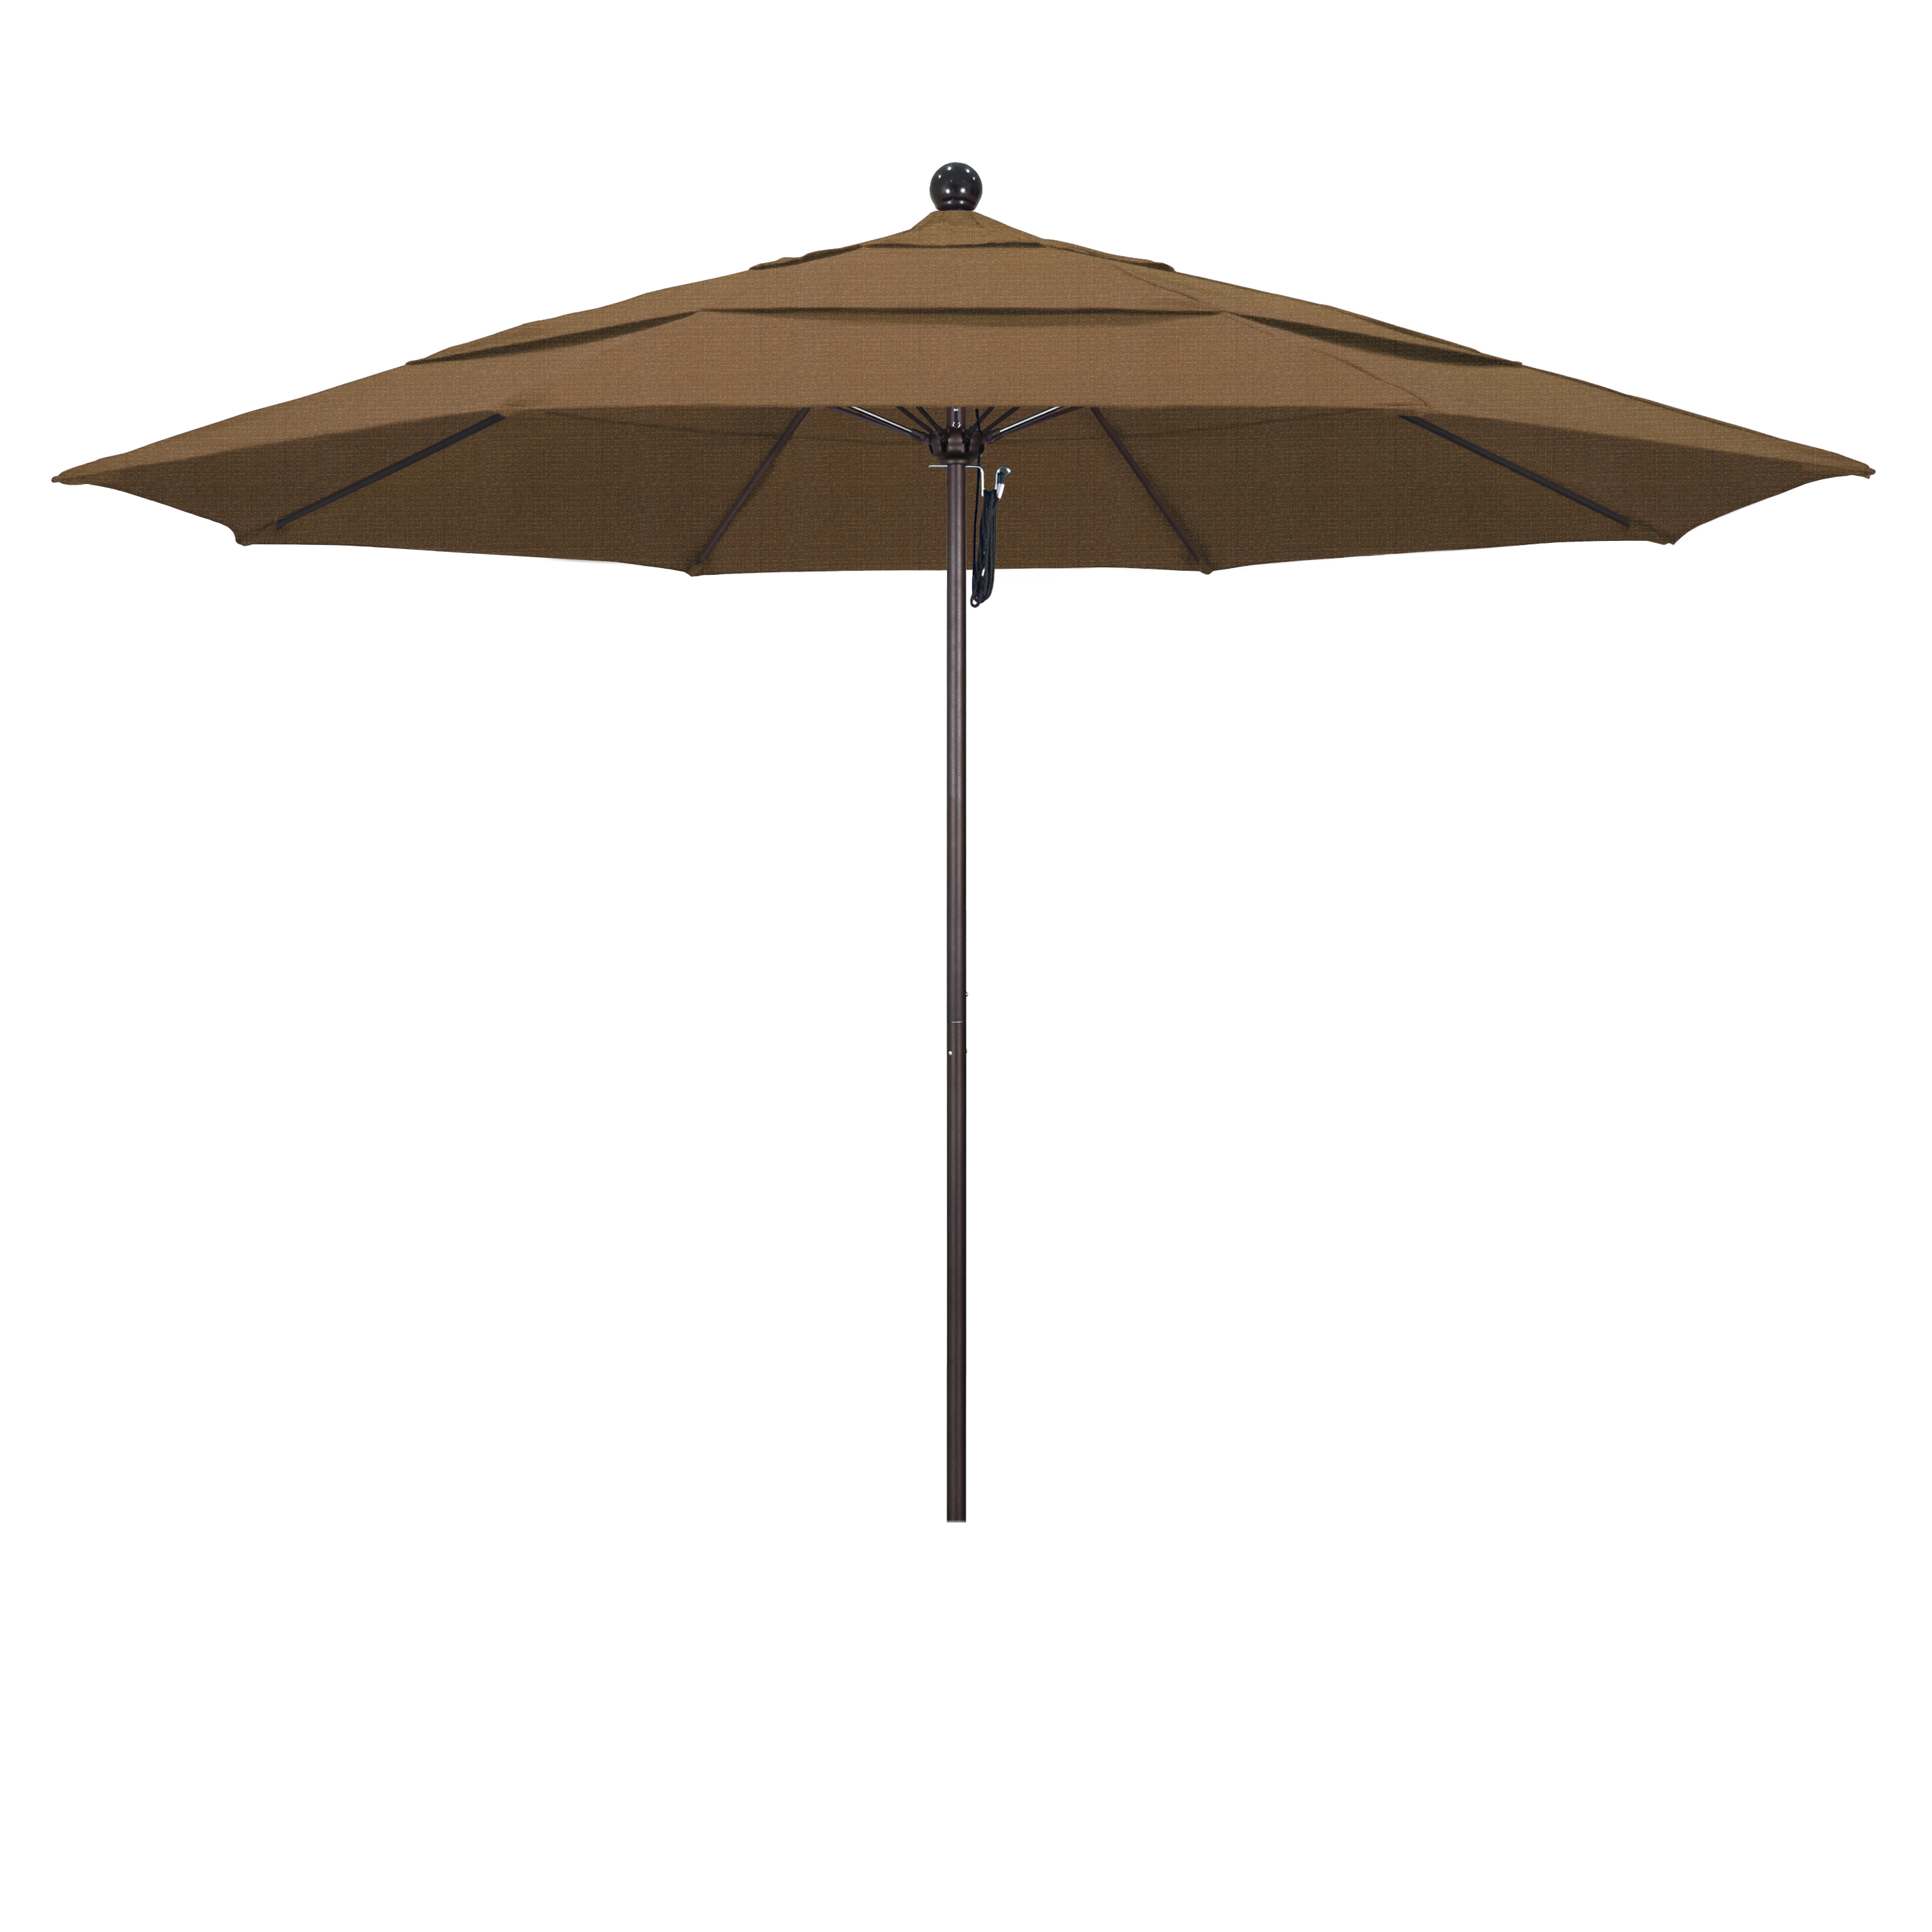 Picture of California Umbrella ALTO118117-F76-DWV 11 ft. Fiberglass Market Umbrella PO DVent Bronze-Olefin-Woven Sesame